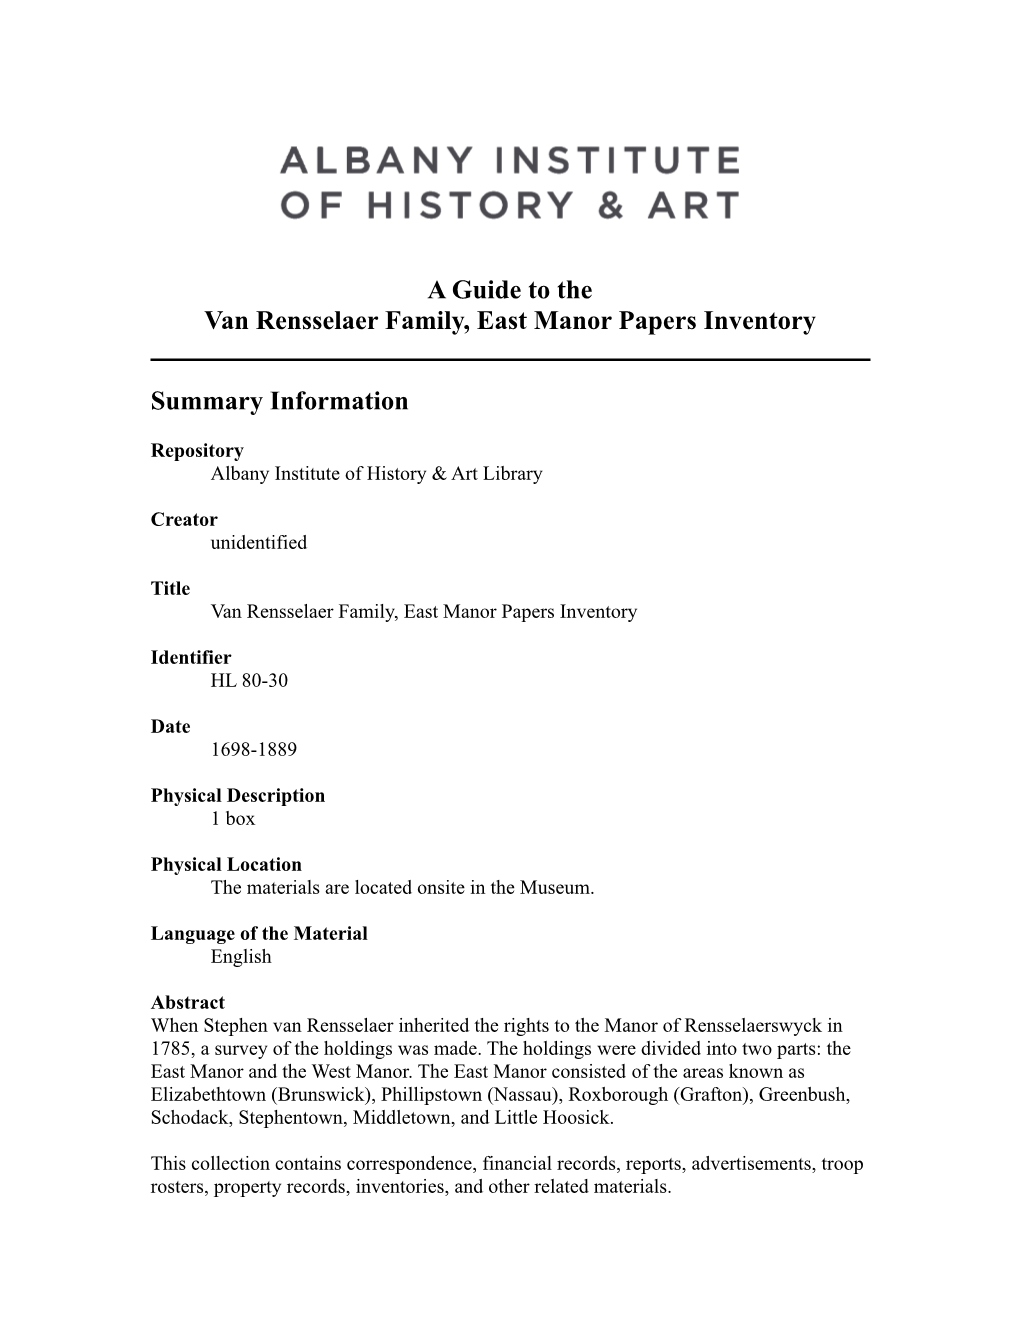 Van Rensselaer Family, East Manor Papers Inventory, 1698-1889, HL 80-30